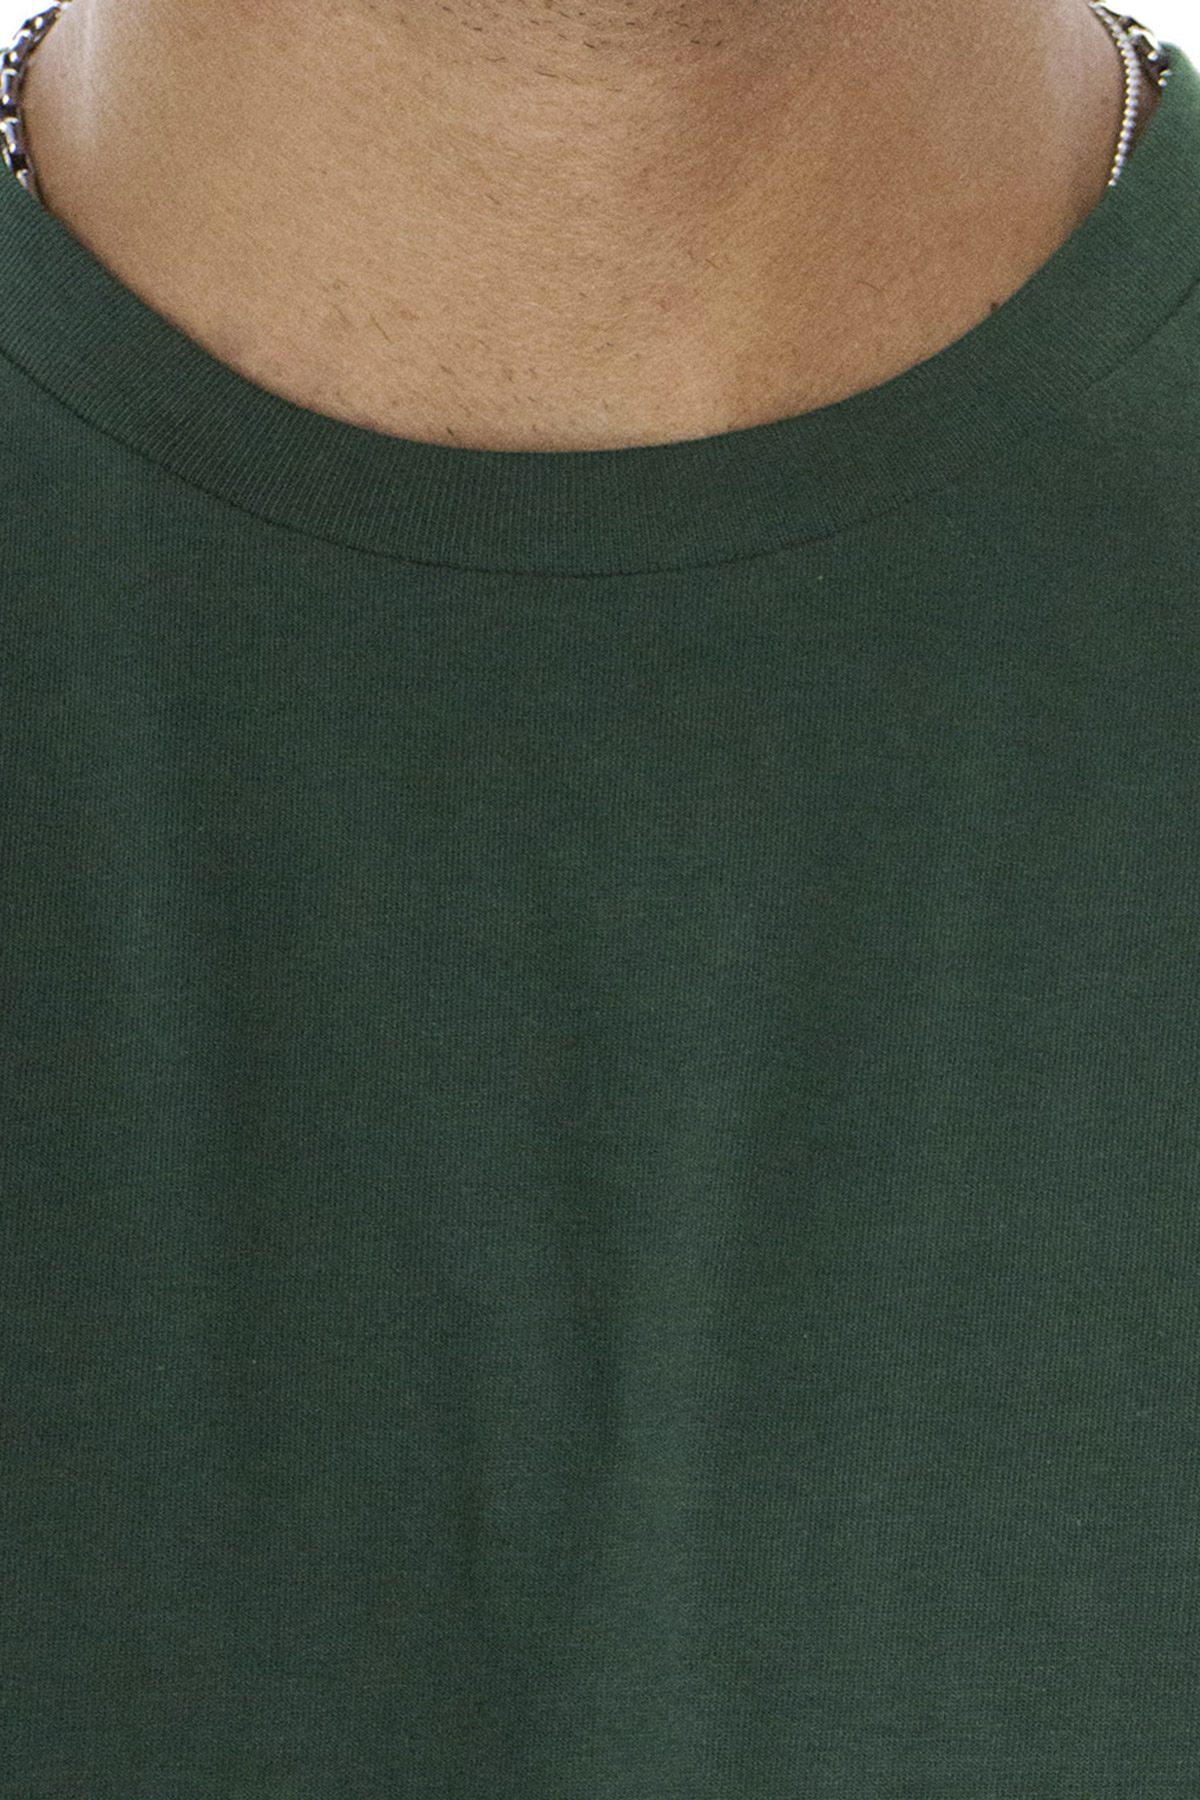 T-shirt da uomo Verde Foresta in cotone organico tinta unita regular fit elasticizzata girocollo